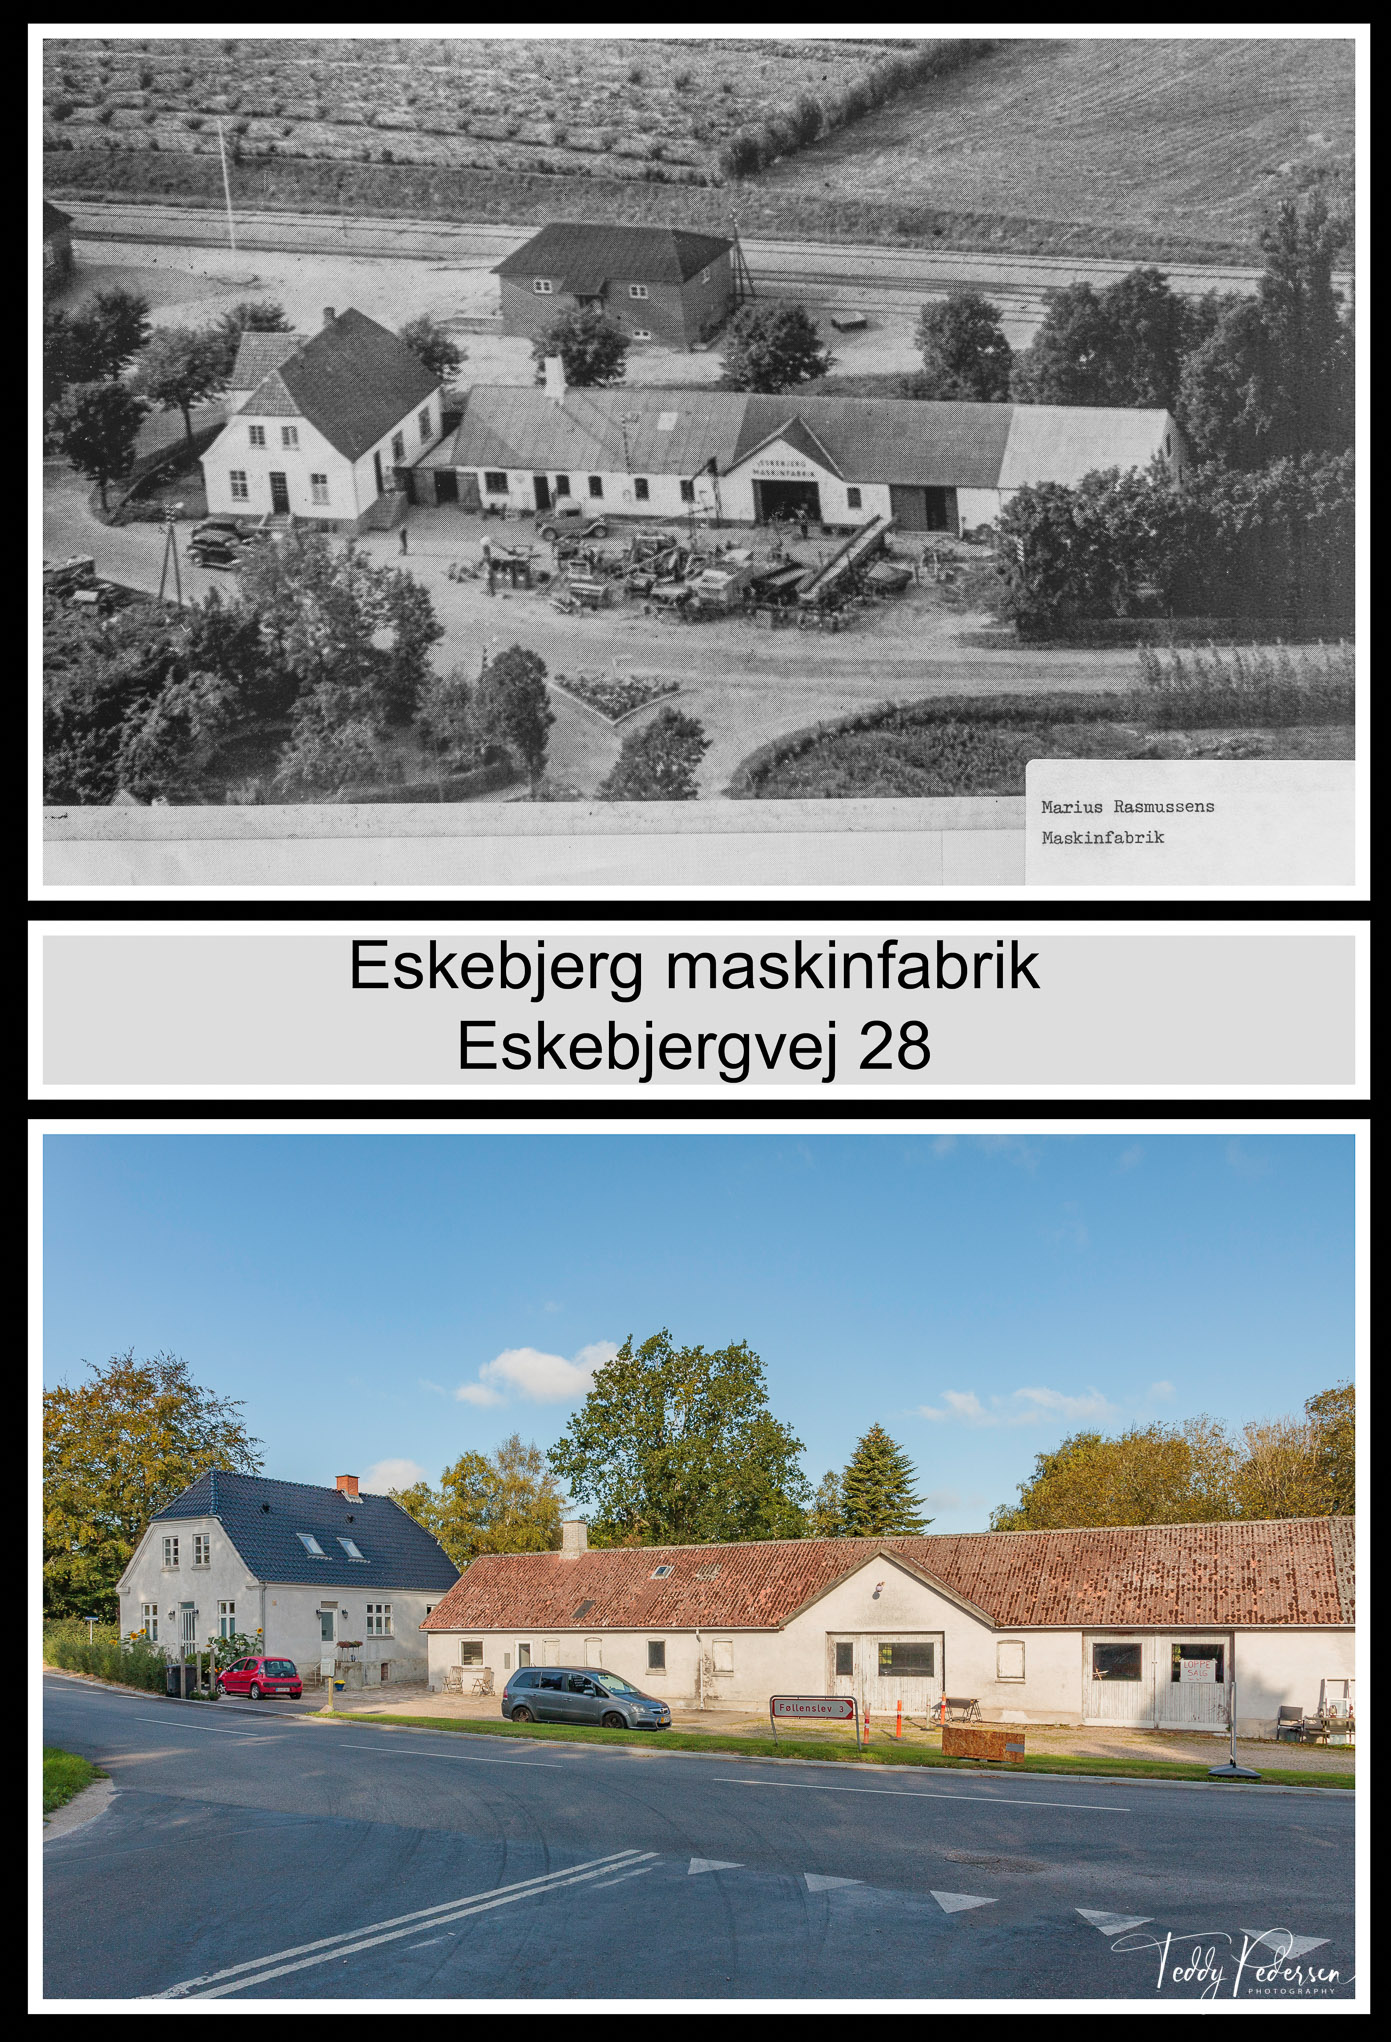 002-041-Eskebjerg-Masinfabrik-Eskebjergvej_HighRes_LowRes